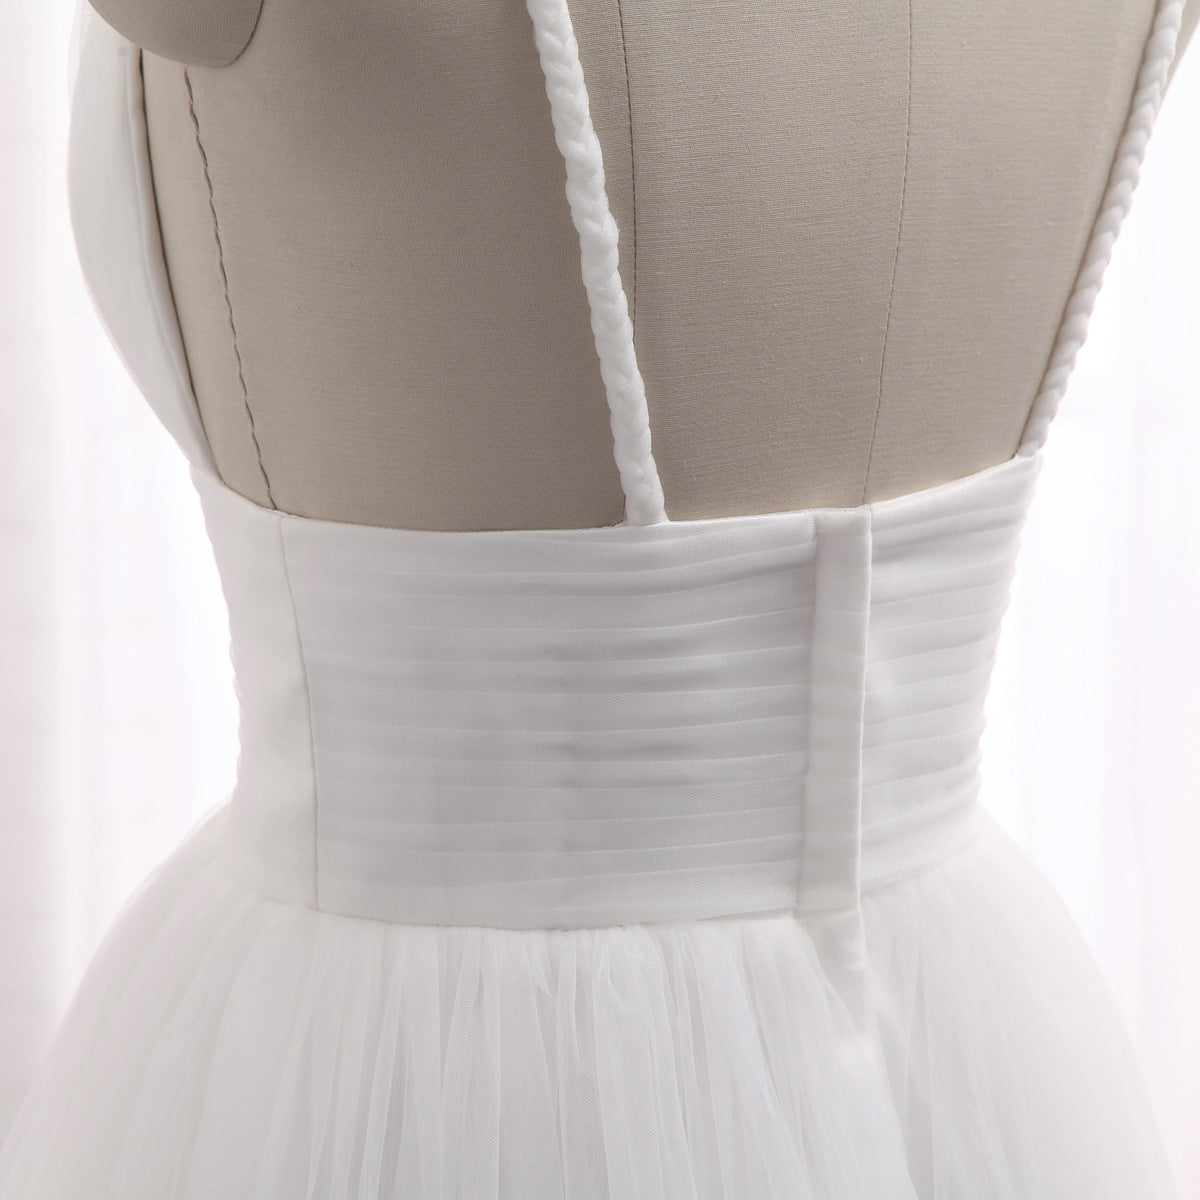 A-Linien-Hochzeitskleid aus fließendem, romantischem Tüll im Boho-Stil mit mehrlagigem Tüllrock #21011216